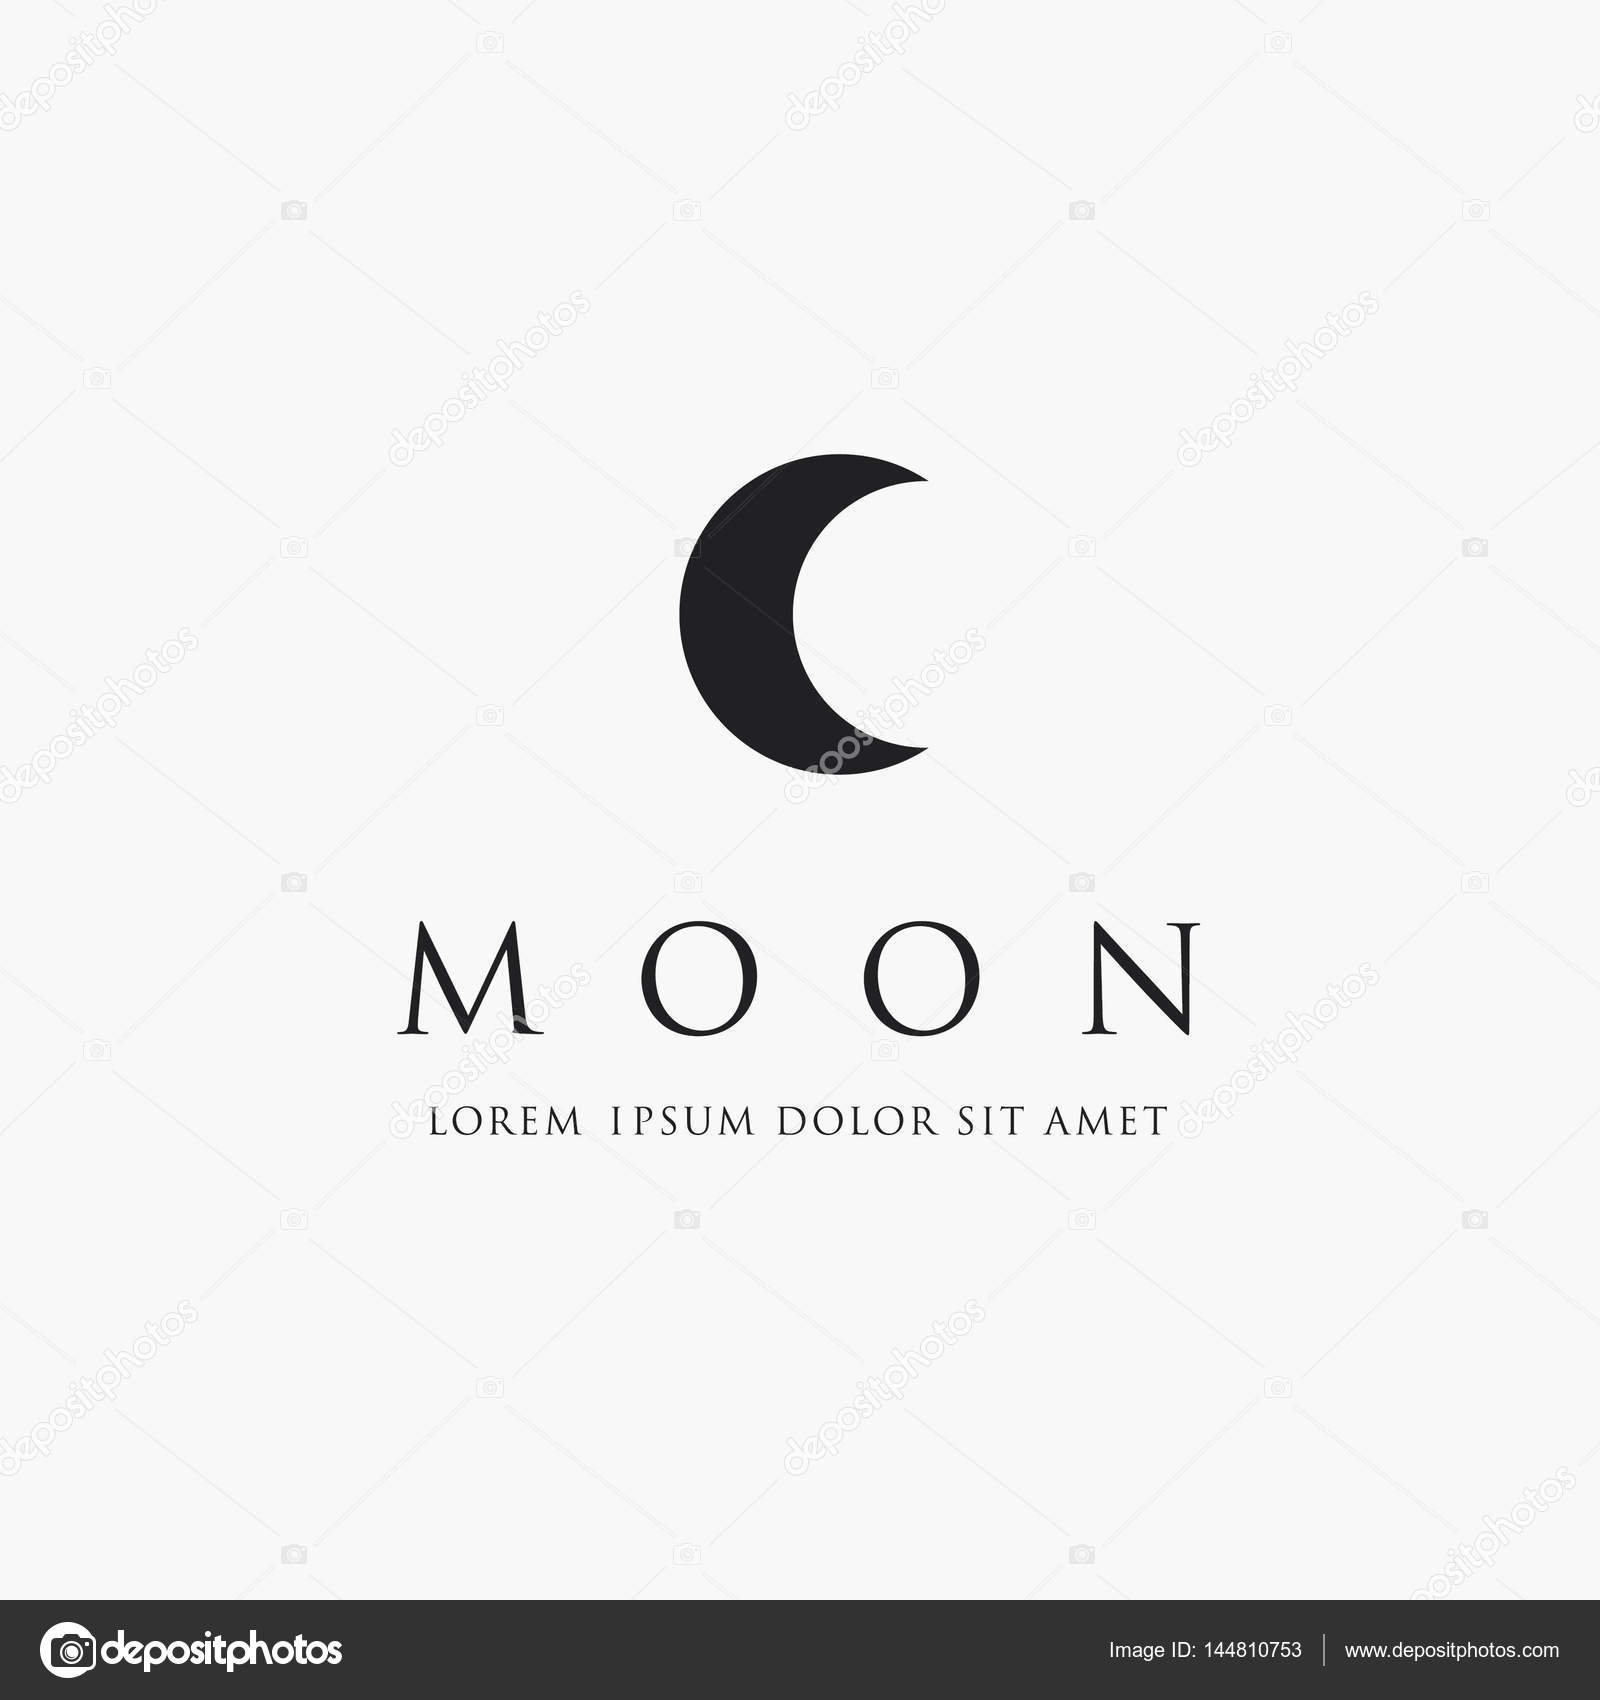 Moon logo design — Stock Vector © Igor_Vkv #144810753